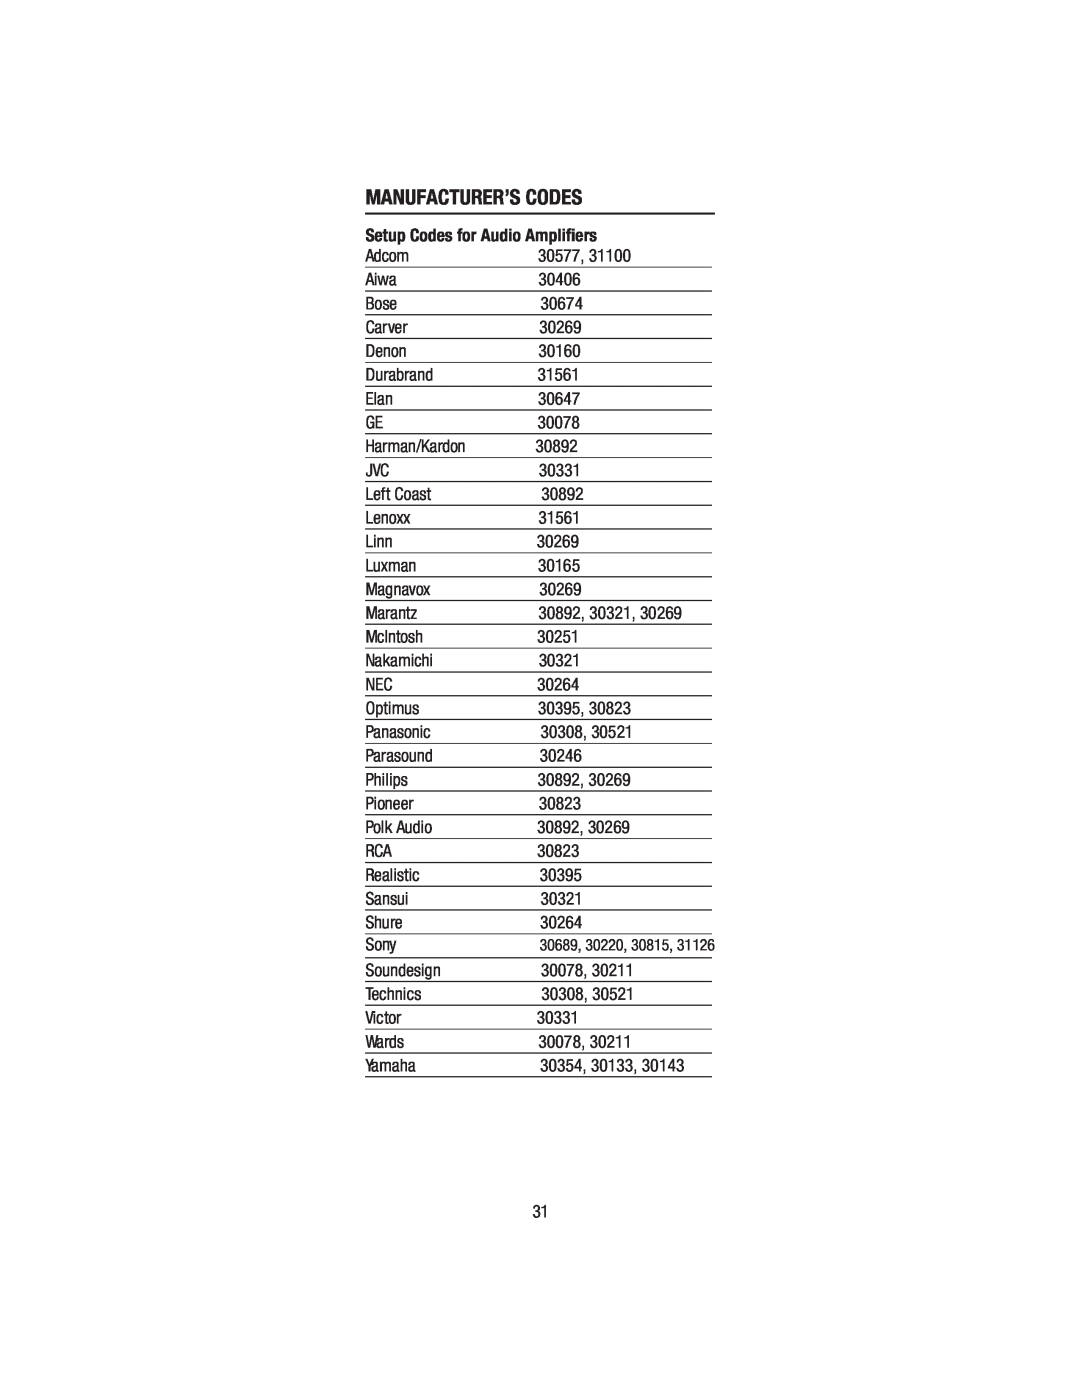 Wayne-Dalton WDHC-20 user manual Manufacturer’S Codes, 30689, 30220, 30815 